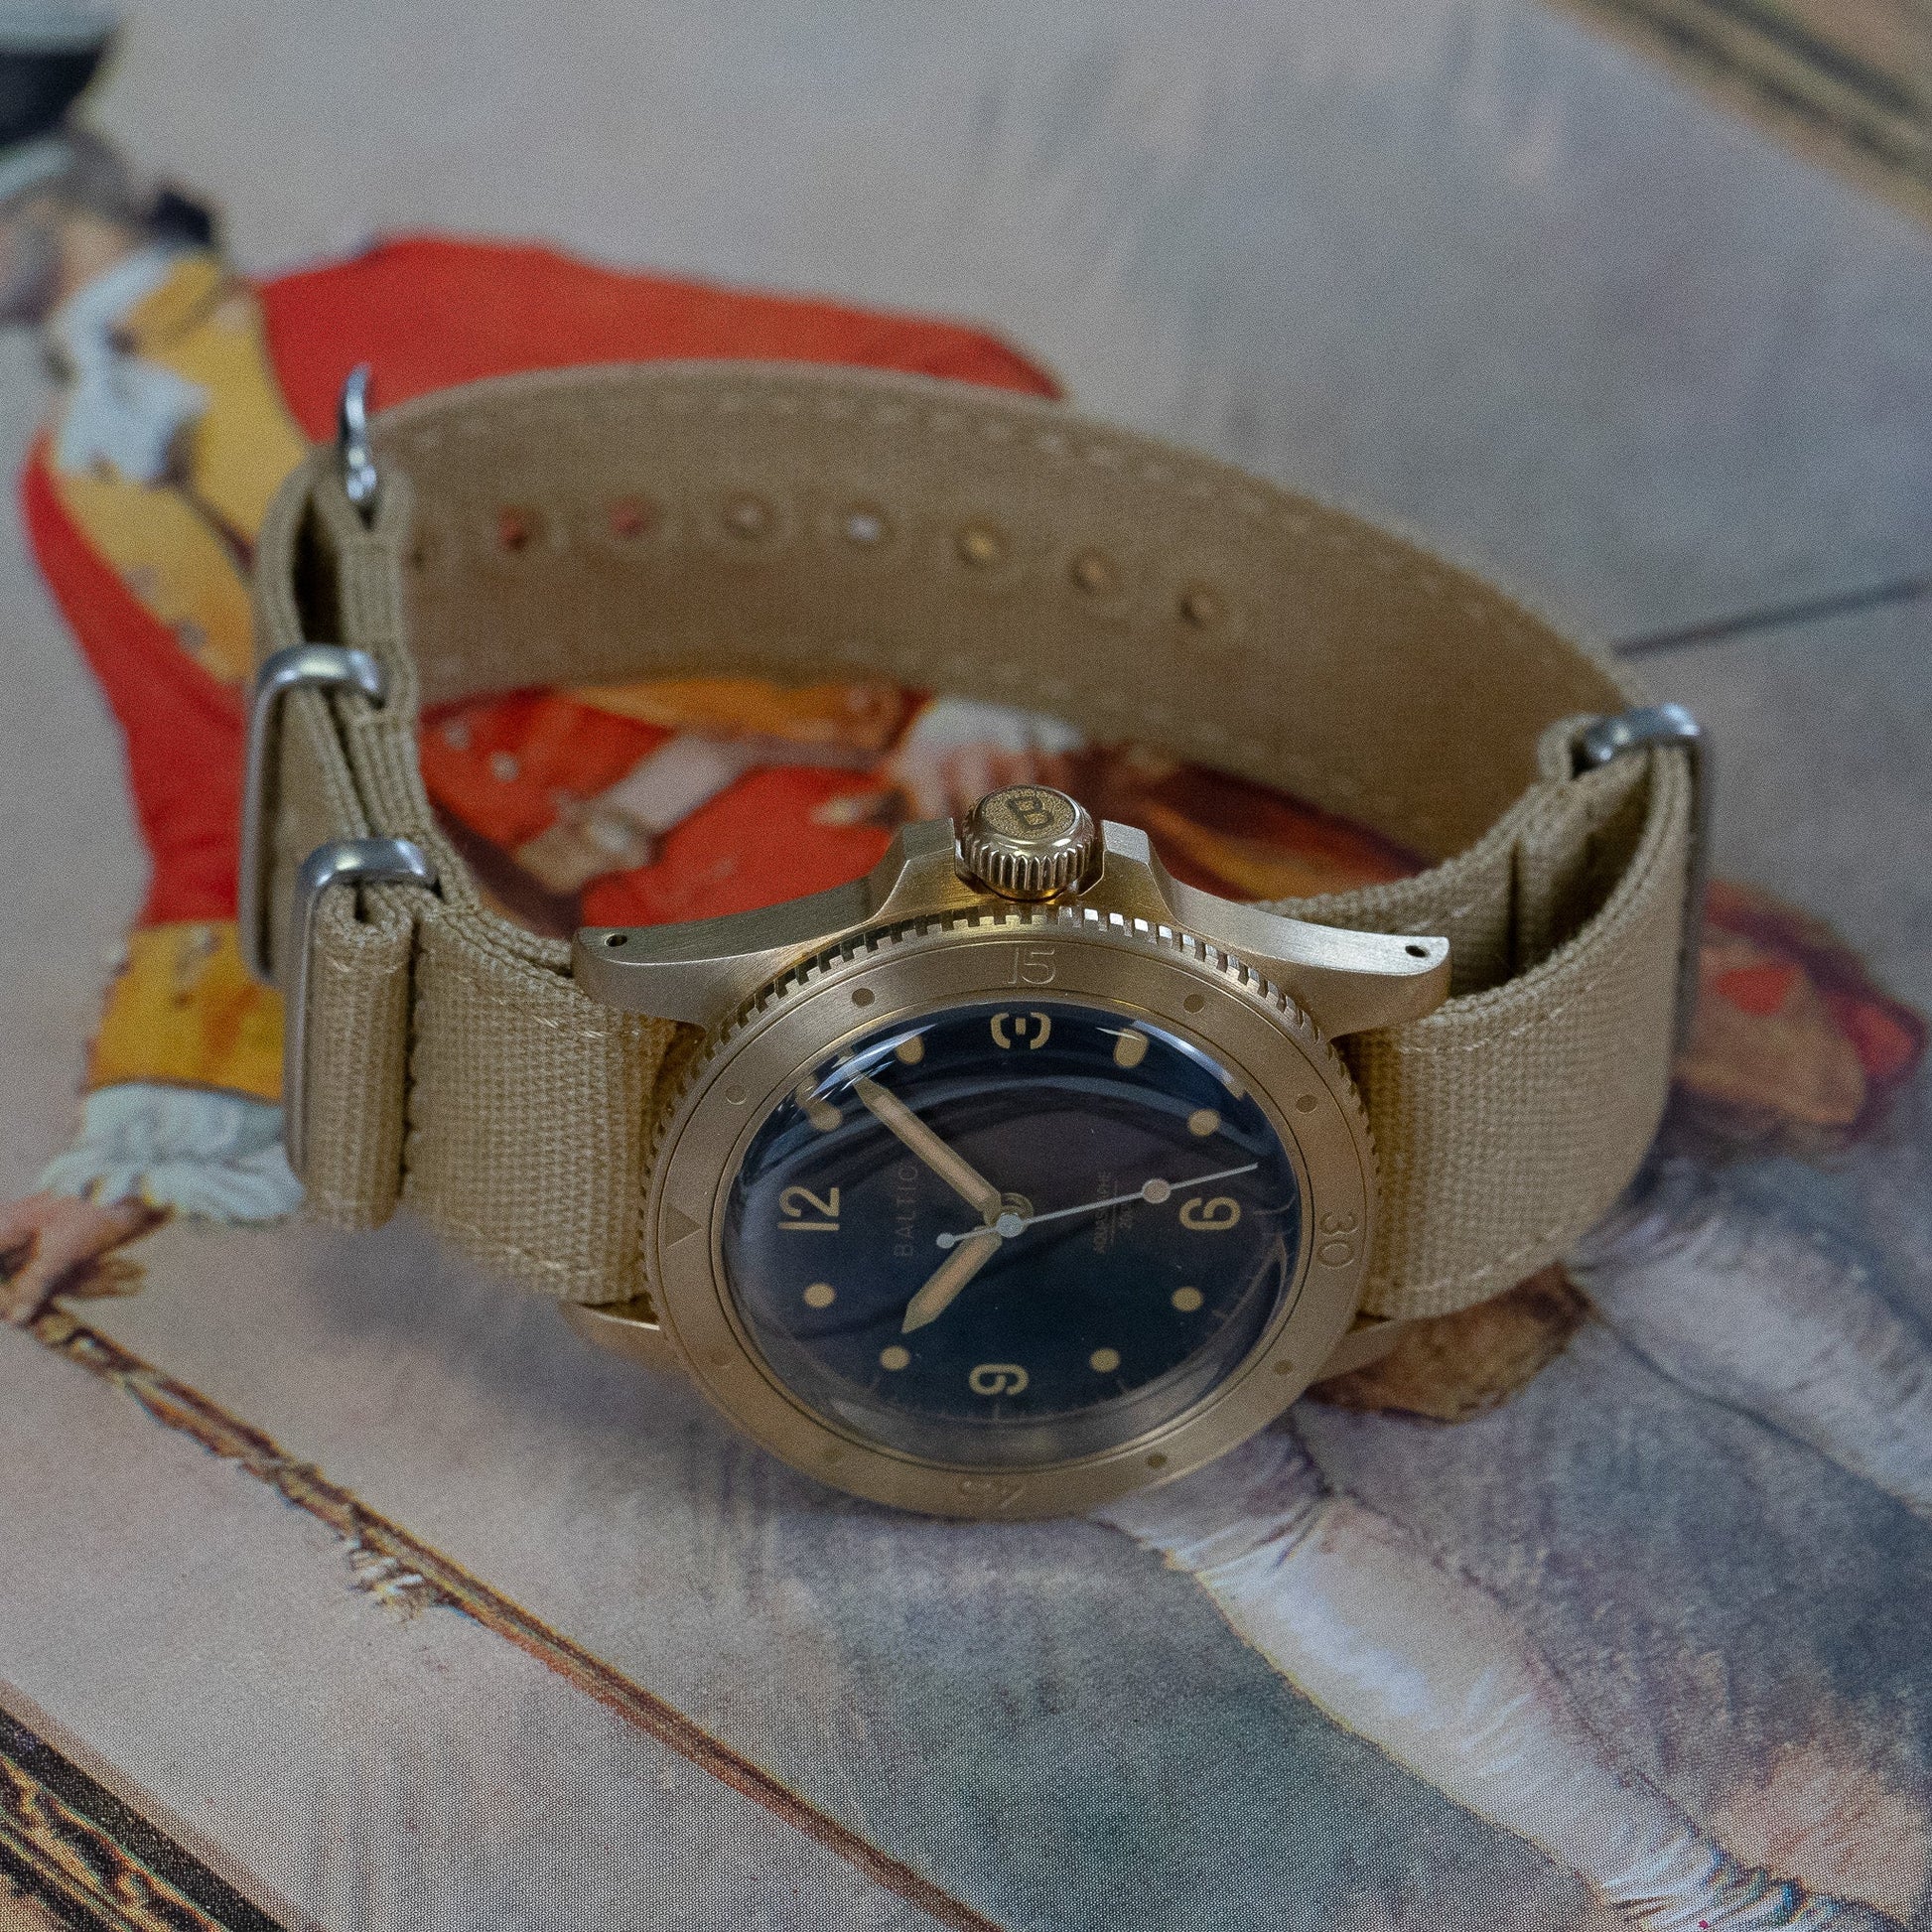 Bracelet montre Nato (toile militaire) - MONTRE A PAPY - Montre automatique seiko mod 18mmBlue